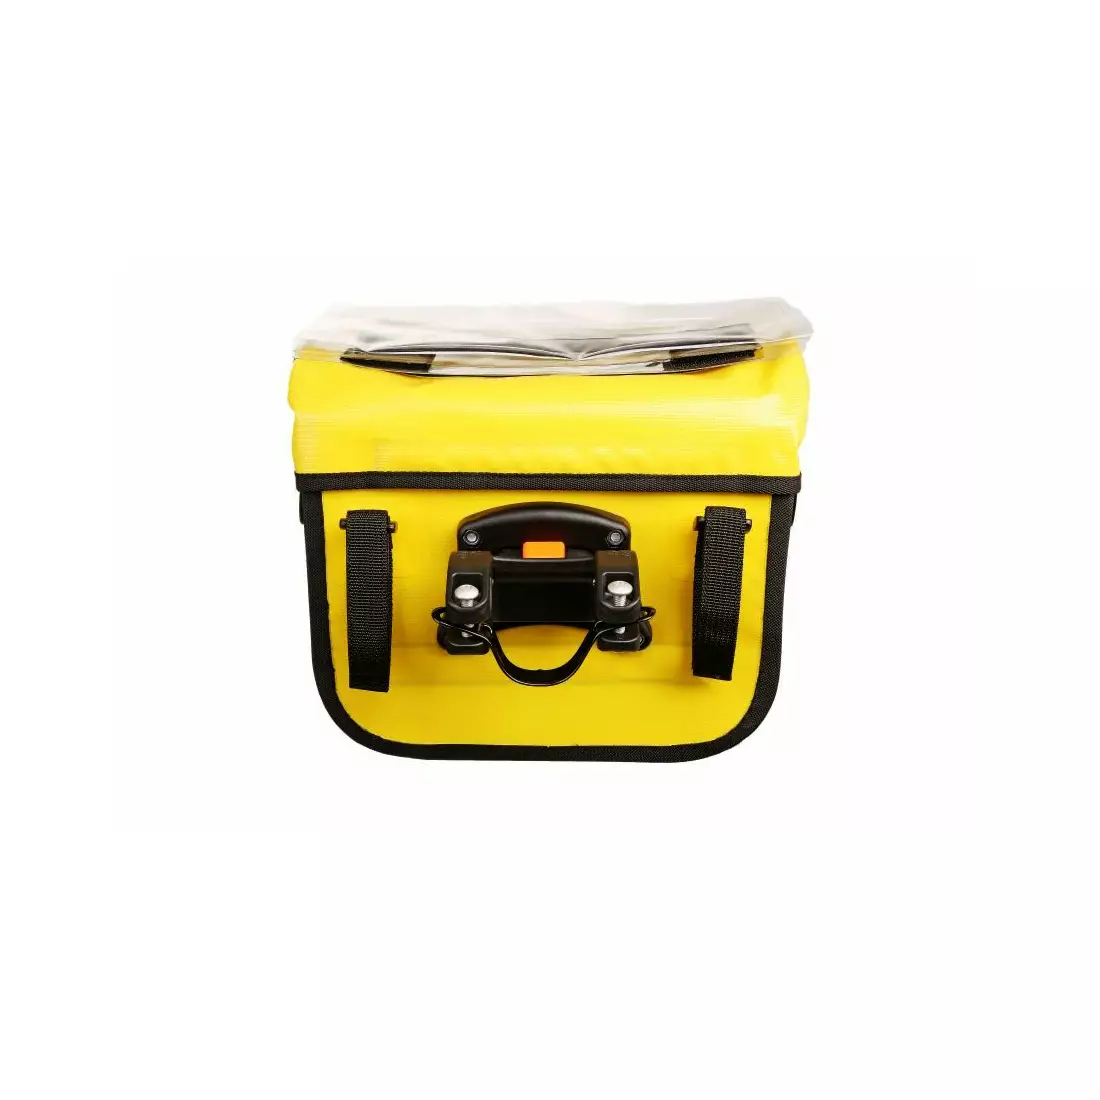 SPORT ARSENAL 310 EXPEDICE Vodotesná klick-fix taška na riadidlá, žltá